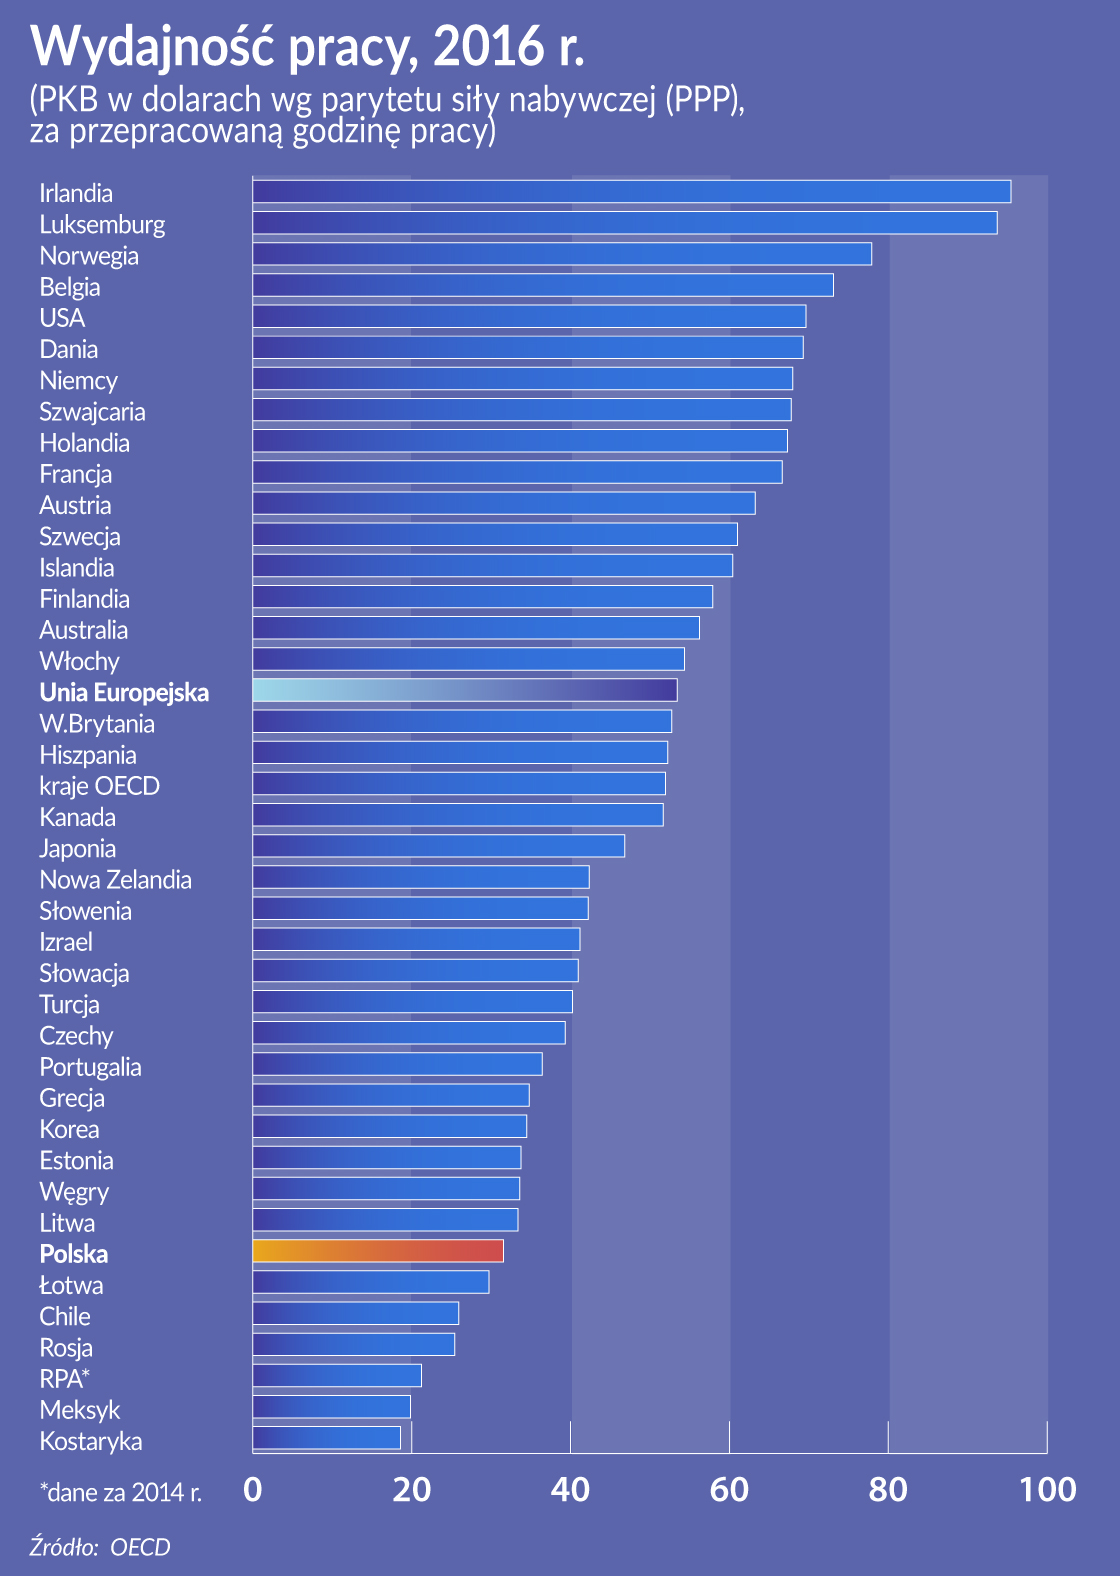 Niewiele krajów poprawia wydajność pracy